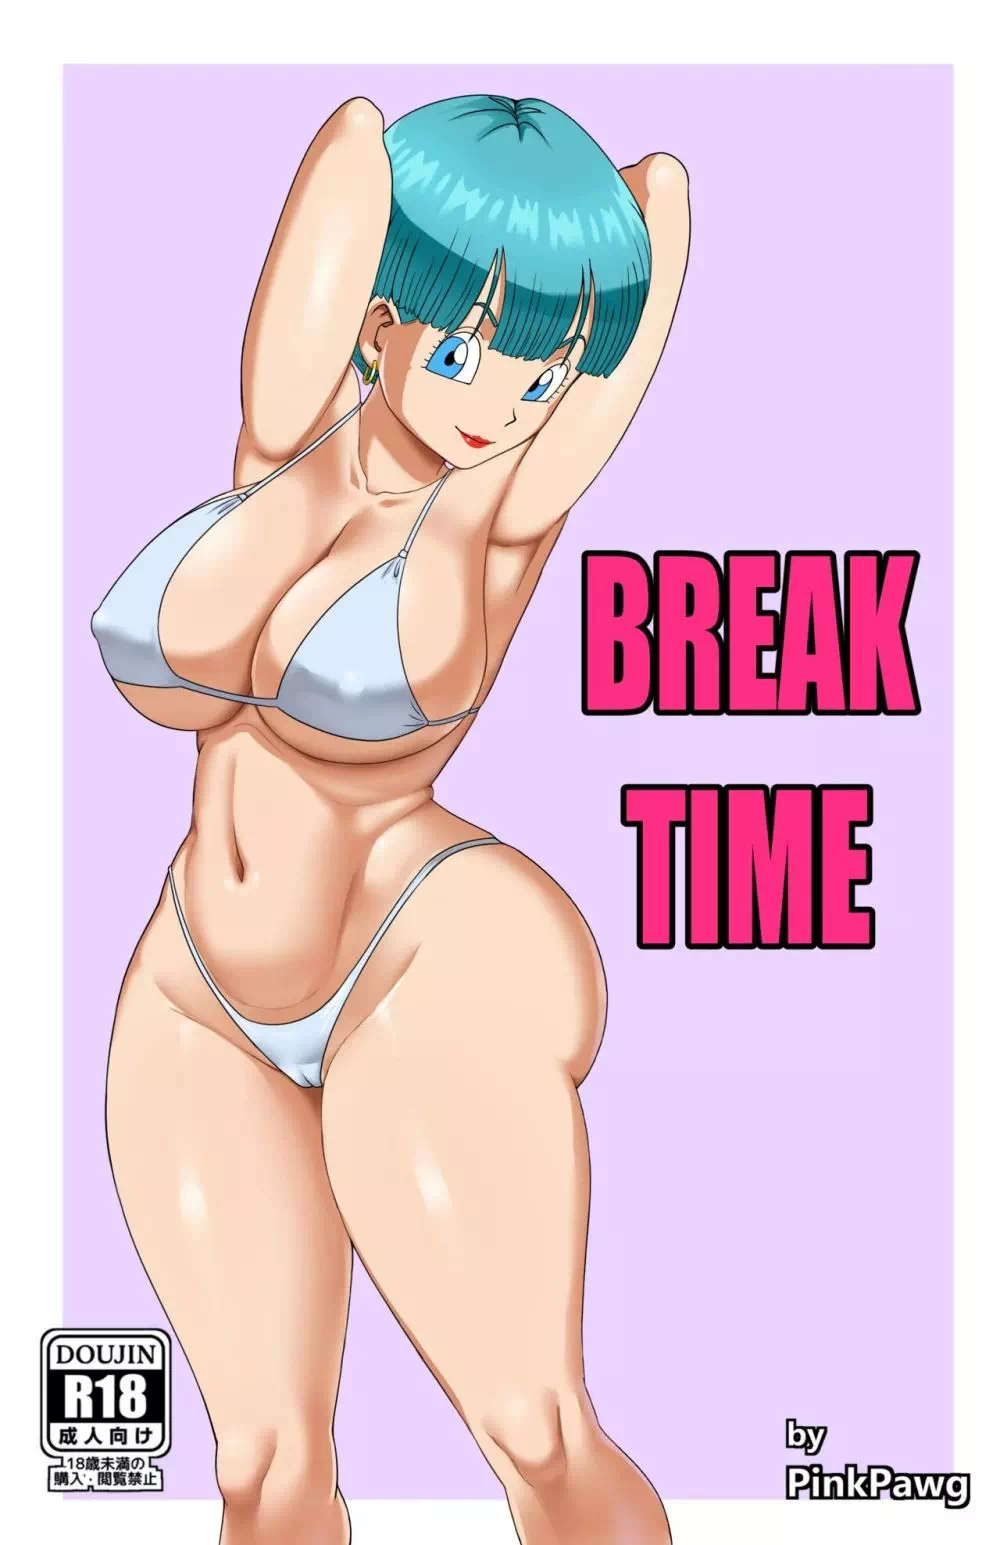 Порно комикс Dragon Ball – Break Time (Перерыв)